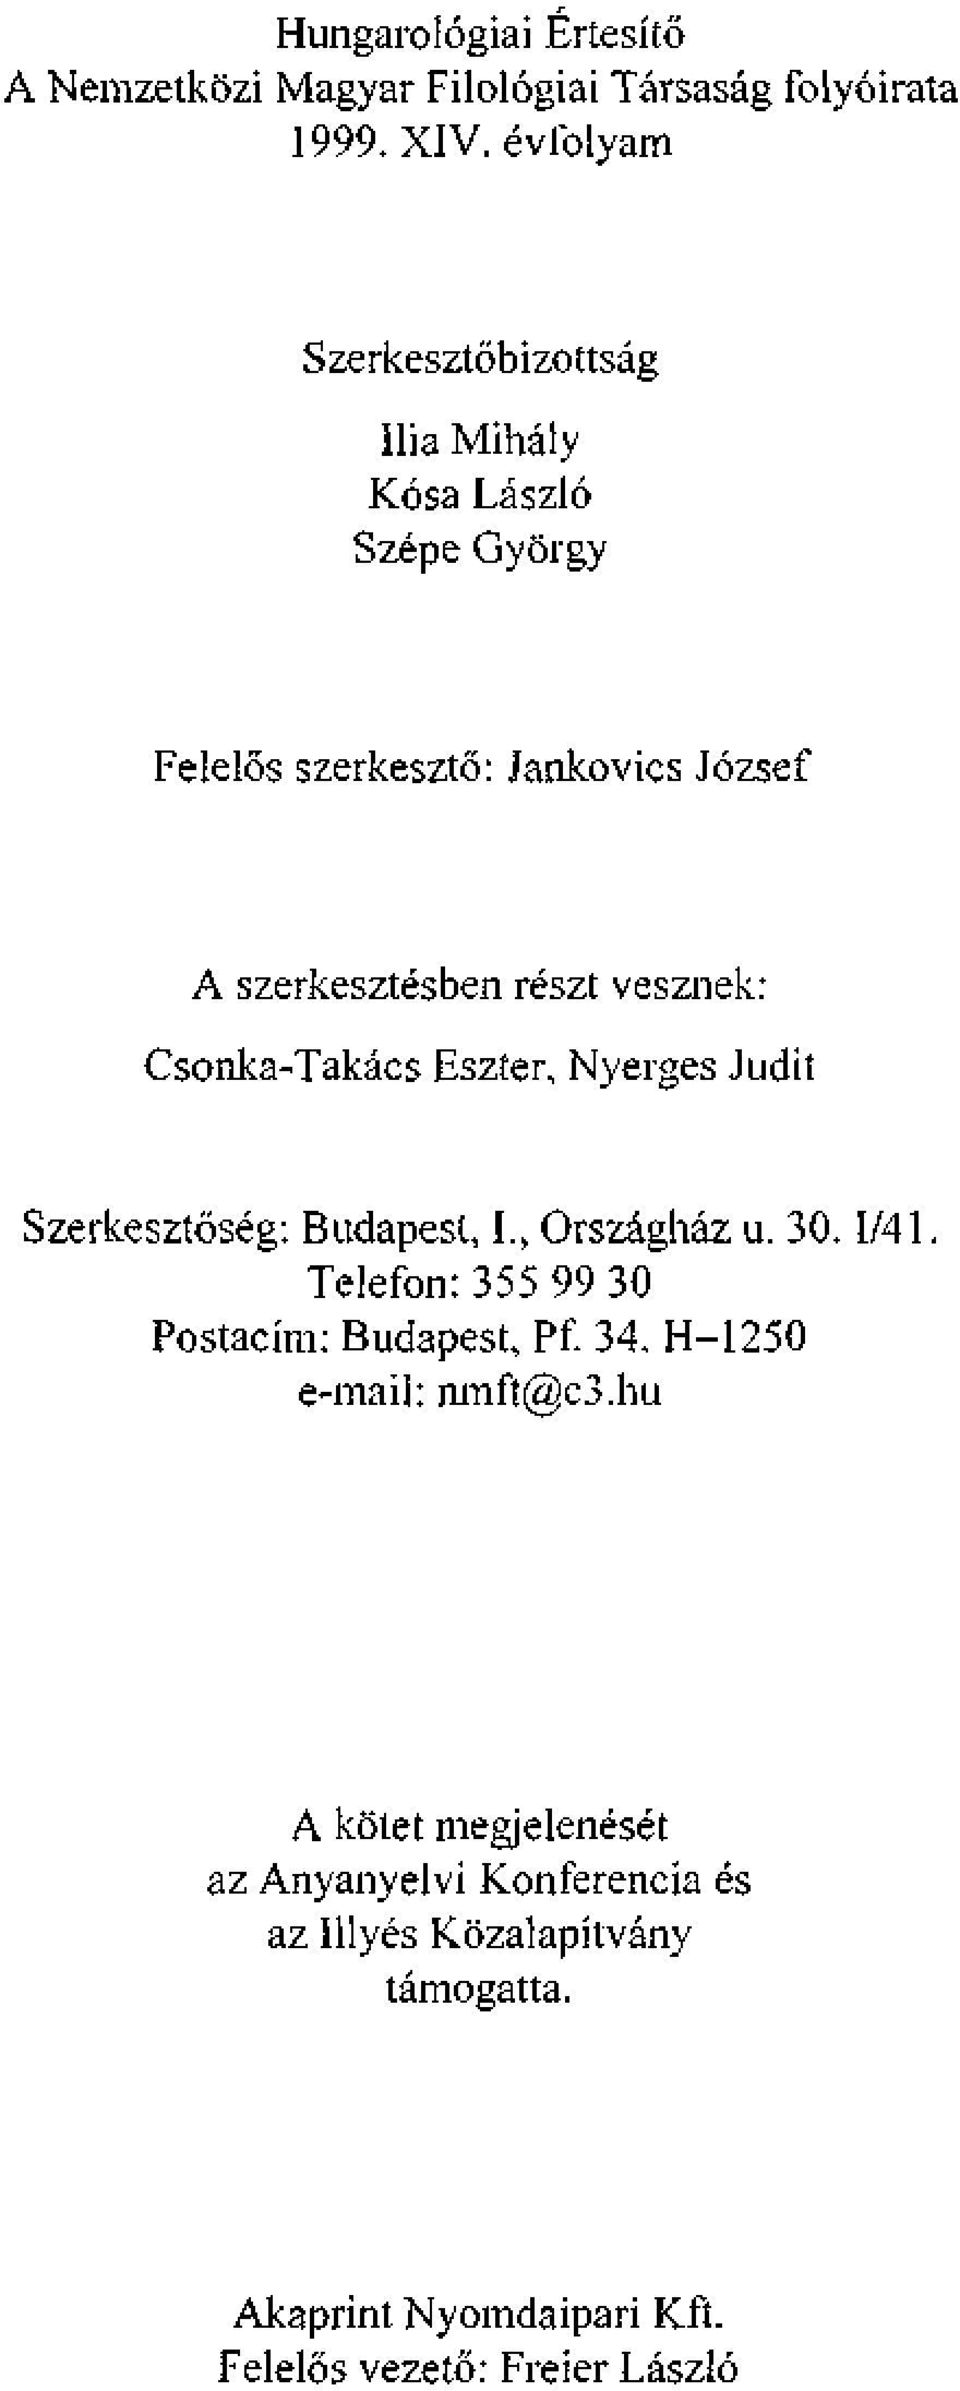 vesznek: Csonka-Takács Eszter, Nyerges Juciit Szerkesztőség: Budapest, I., Országház u. 30.1/41.